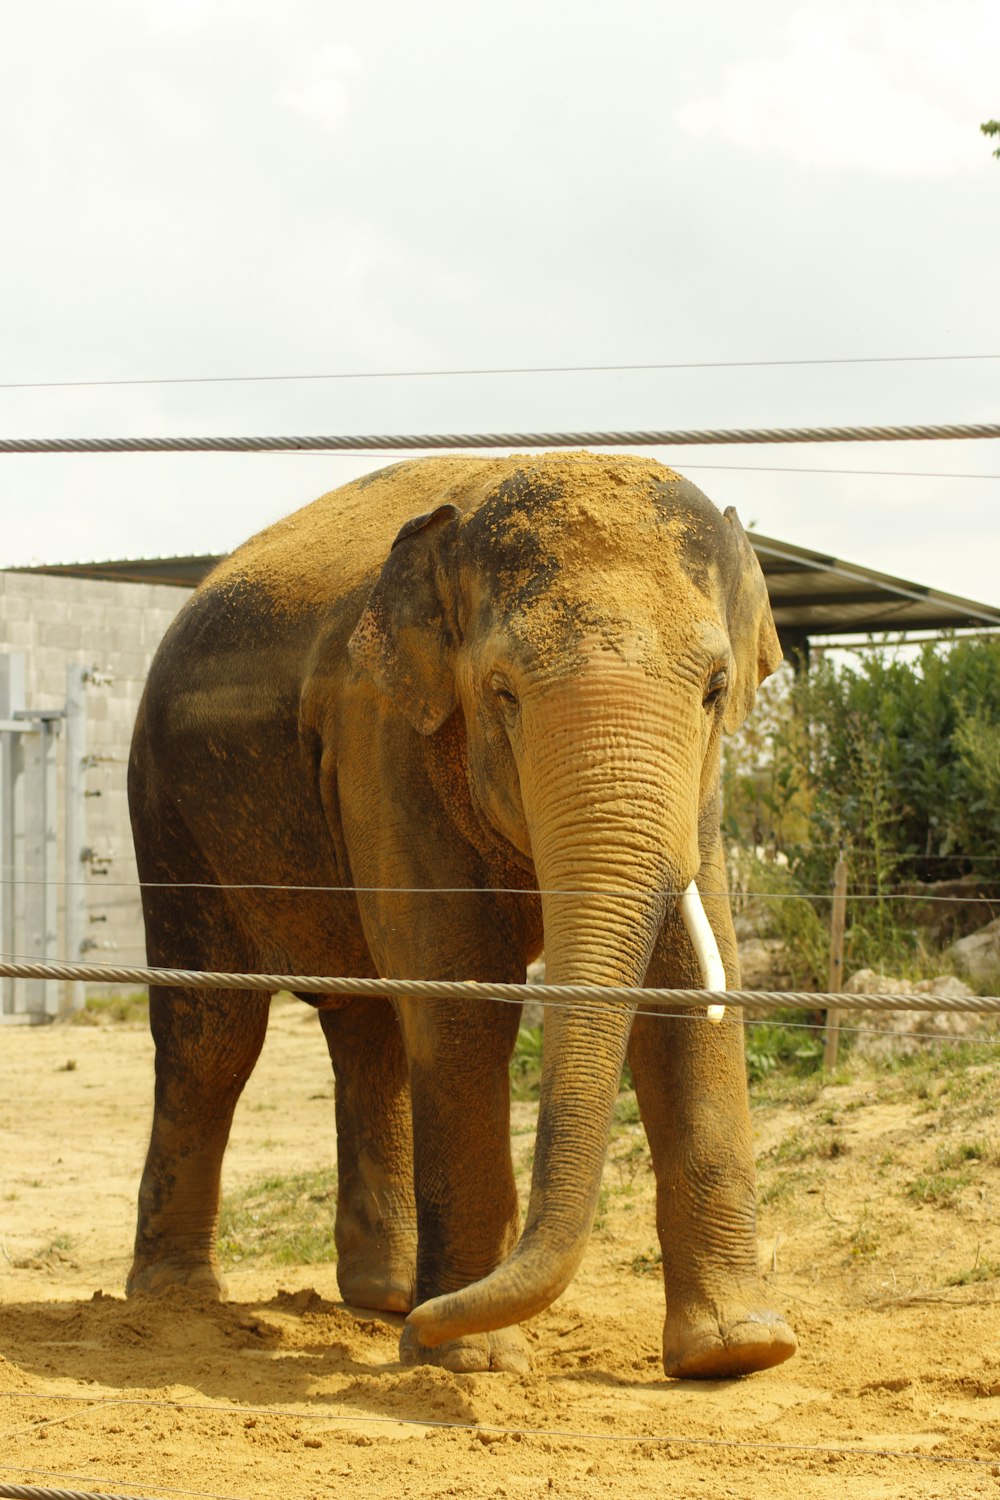 Un elefante in piedi nella sporcizia dietro una recinzione metallica